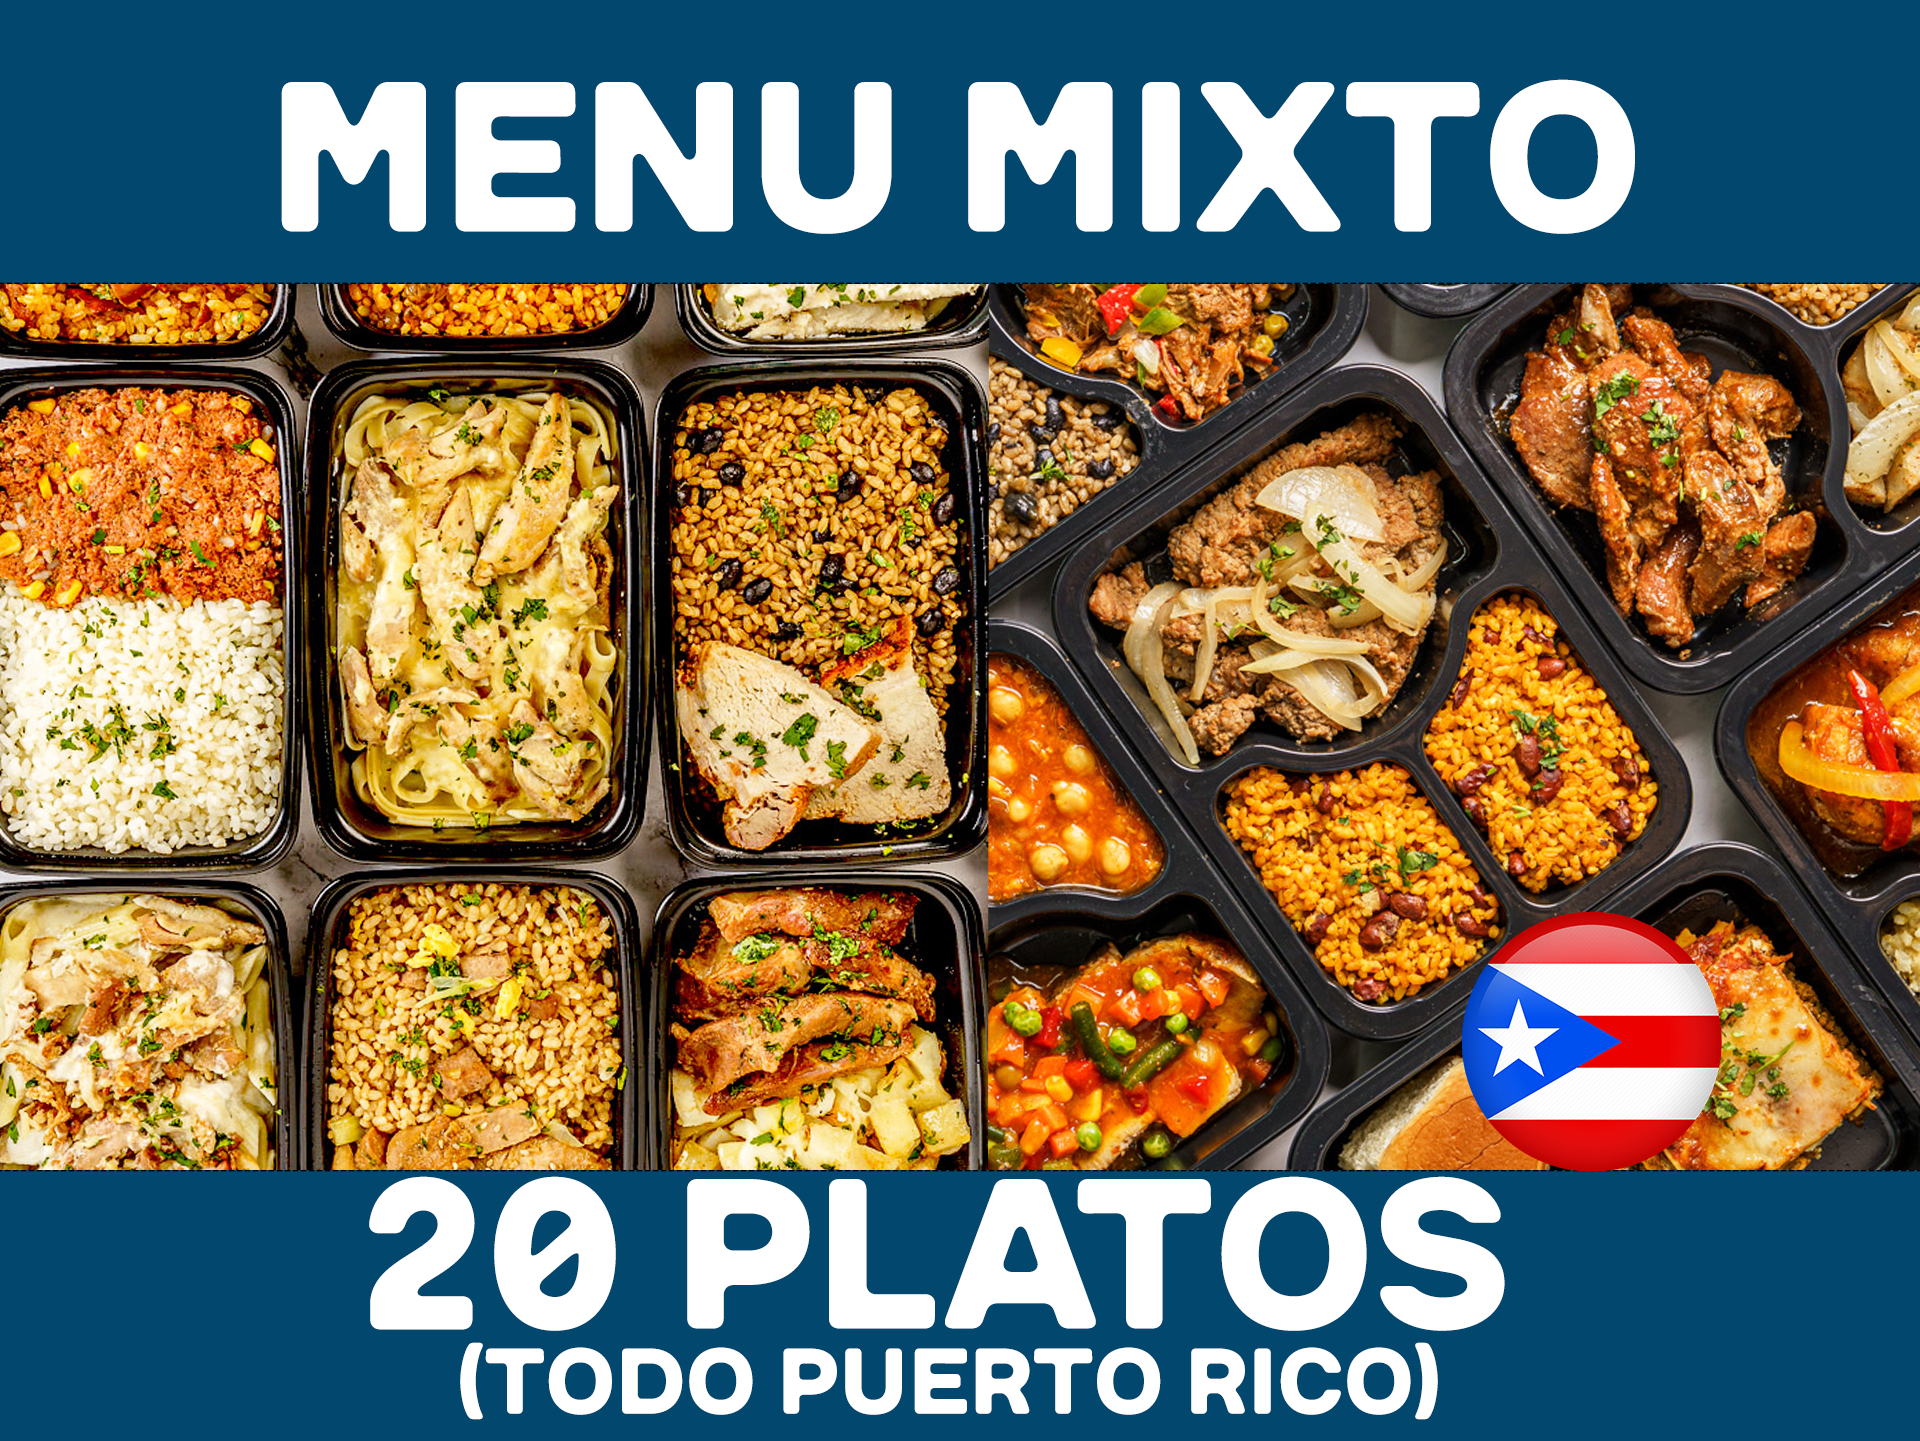 20 Platos - MENU MIXTO  ($6.99 -10 Value / $9.99 -10 Premium / por plato refrigerado)